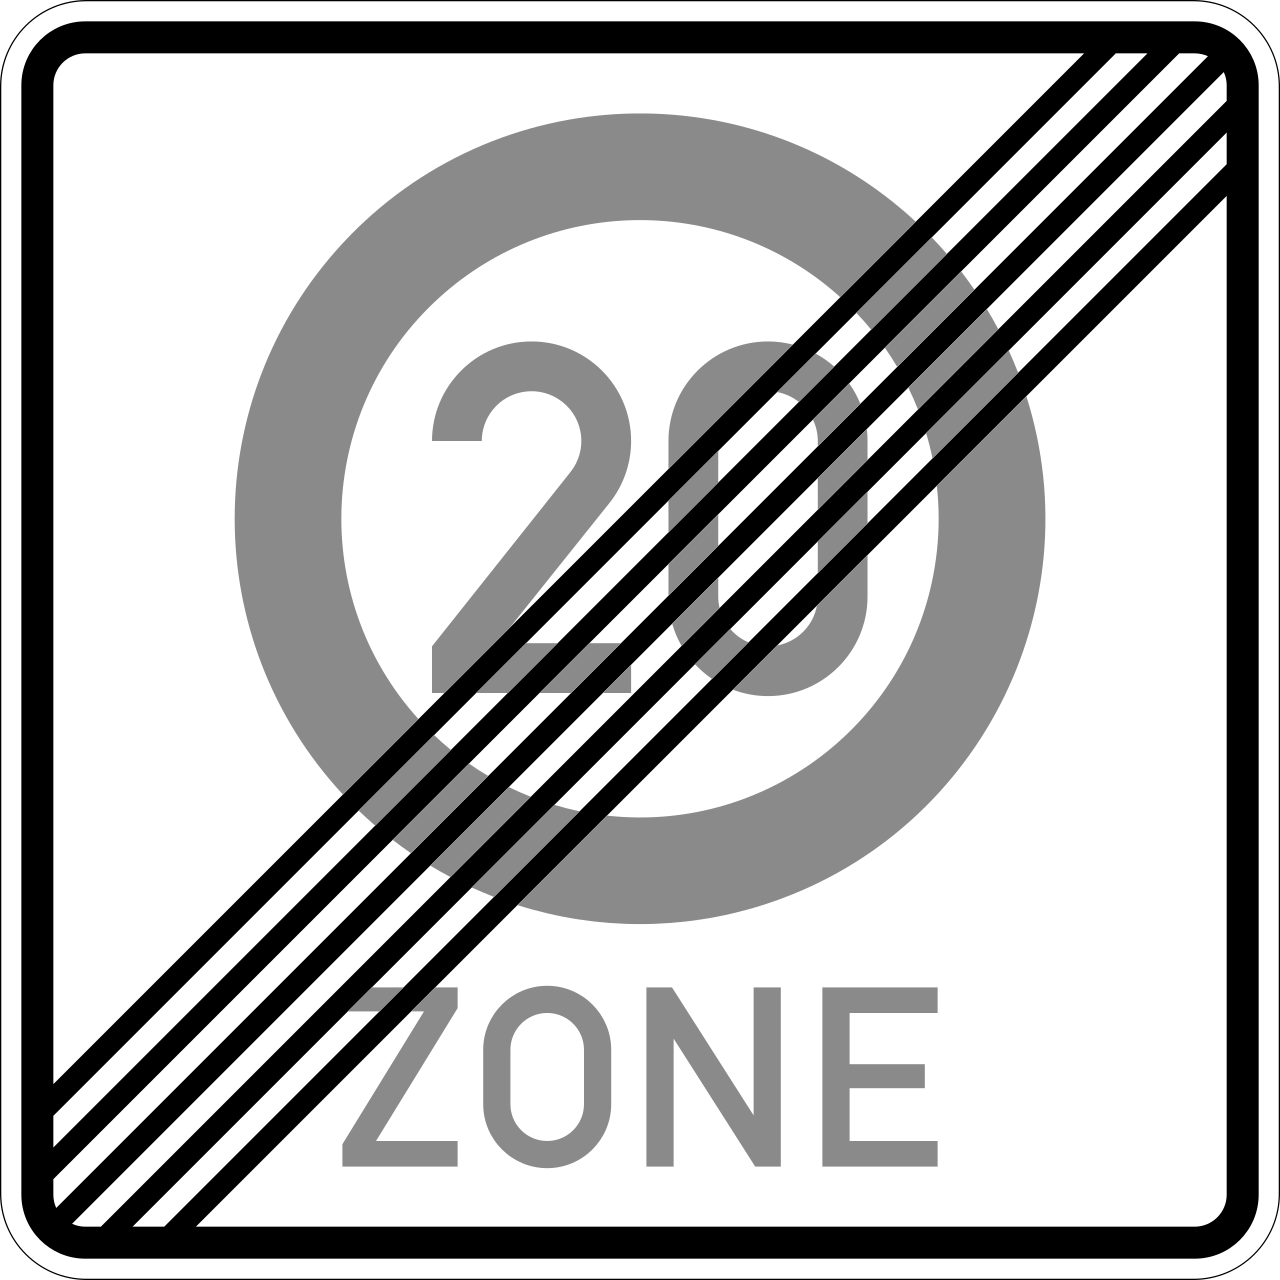 Ende einer Tempo 20-Zone (VzKat 274.2-20)